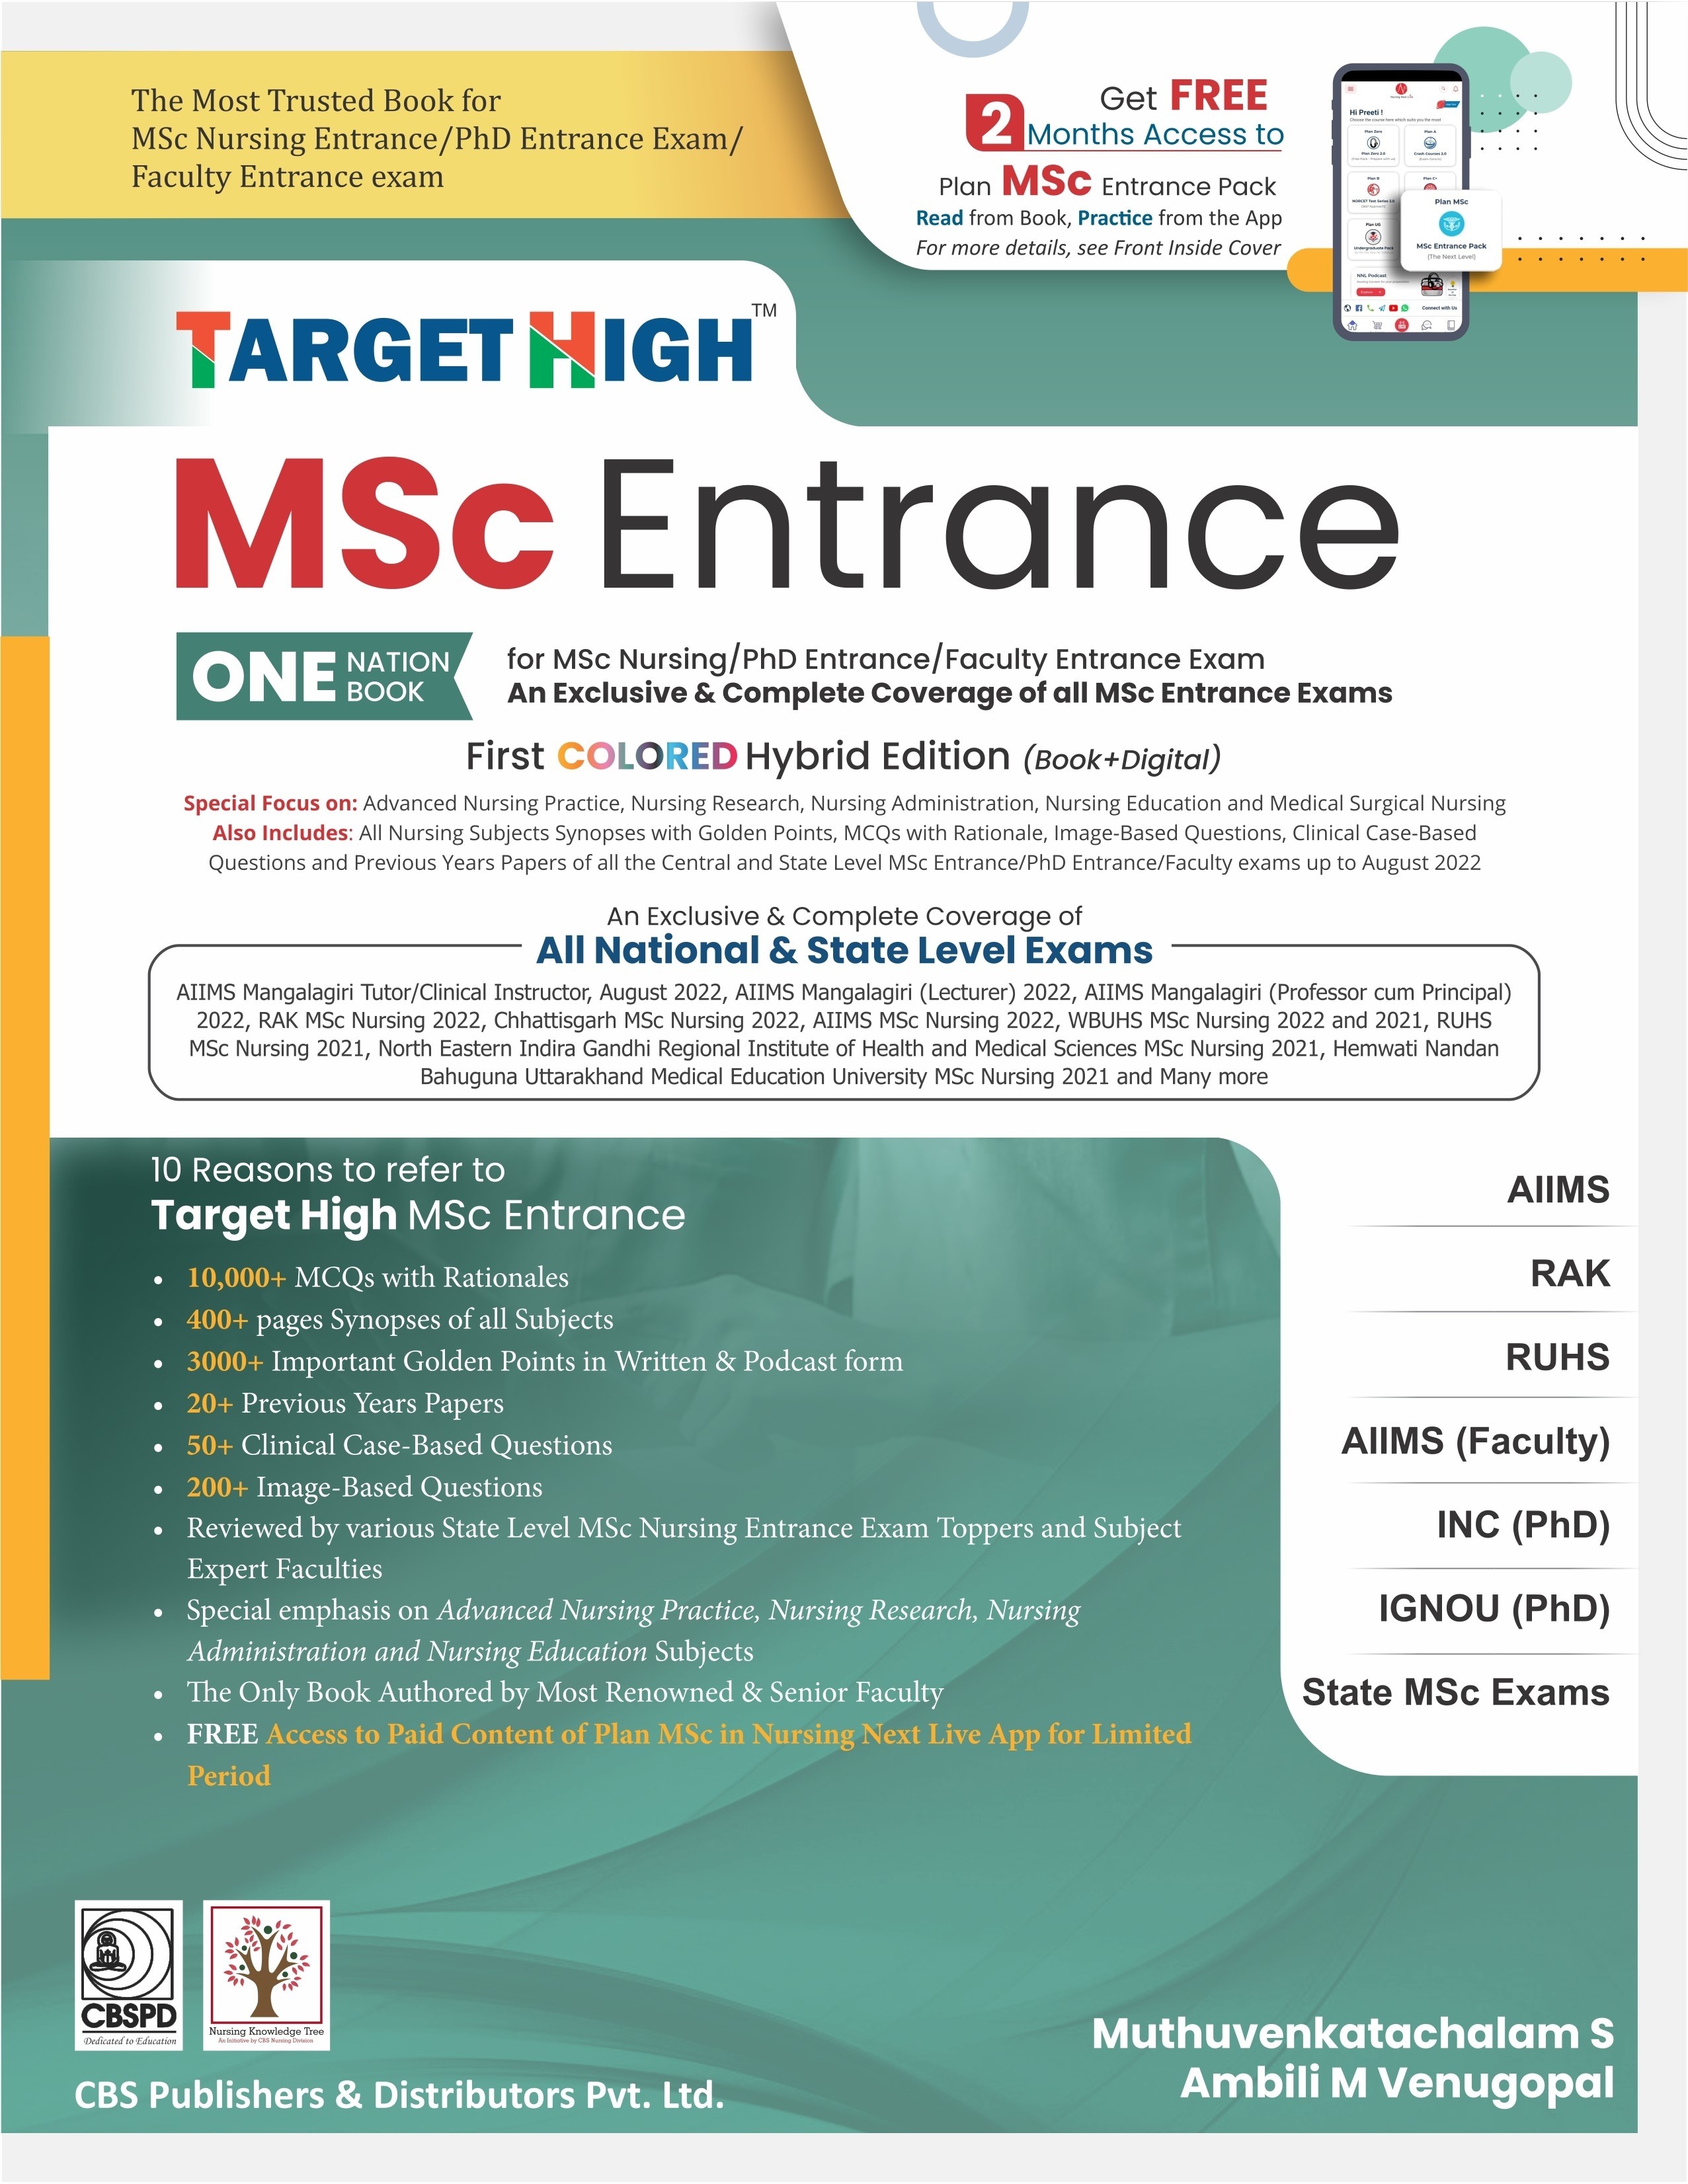 Target High MSc Entrance